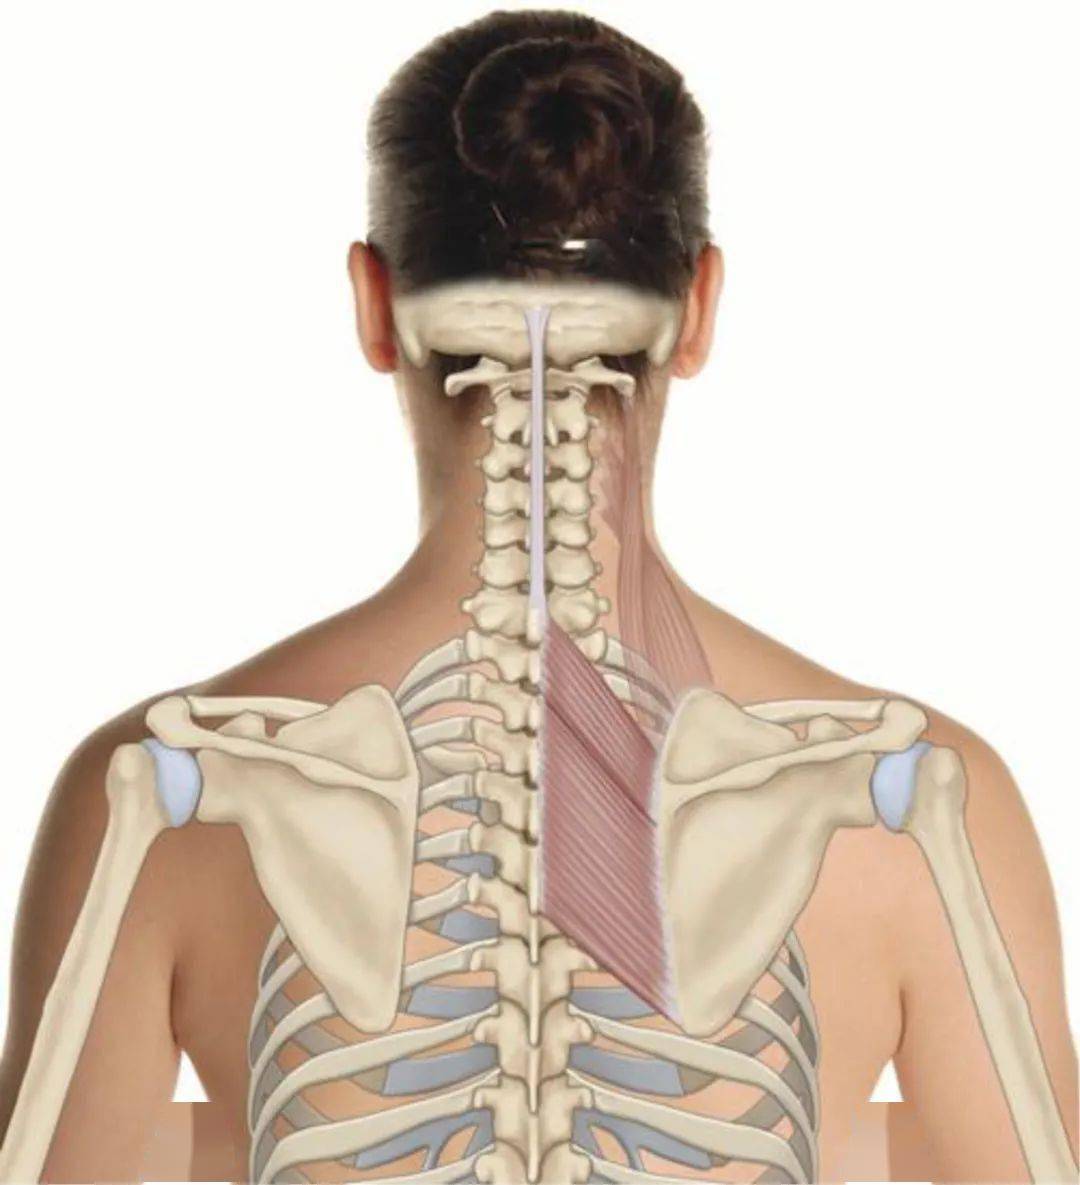 解剖 起点:下位2 个颈椎和上位4 个胸椎棘突. 止点:肩胛骨内侧缘.